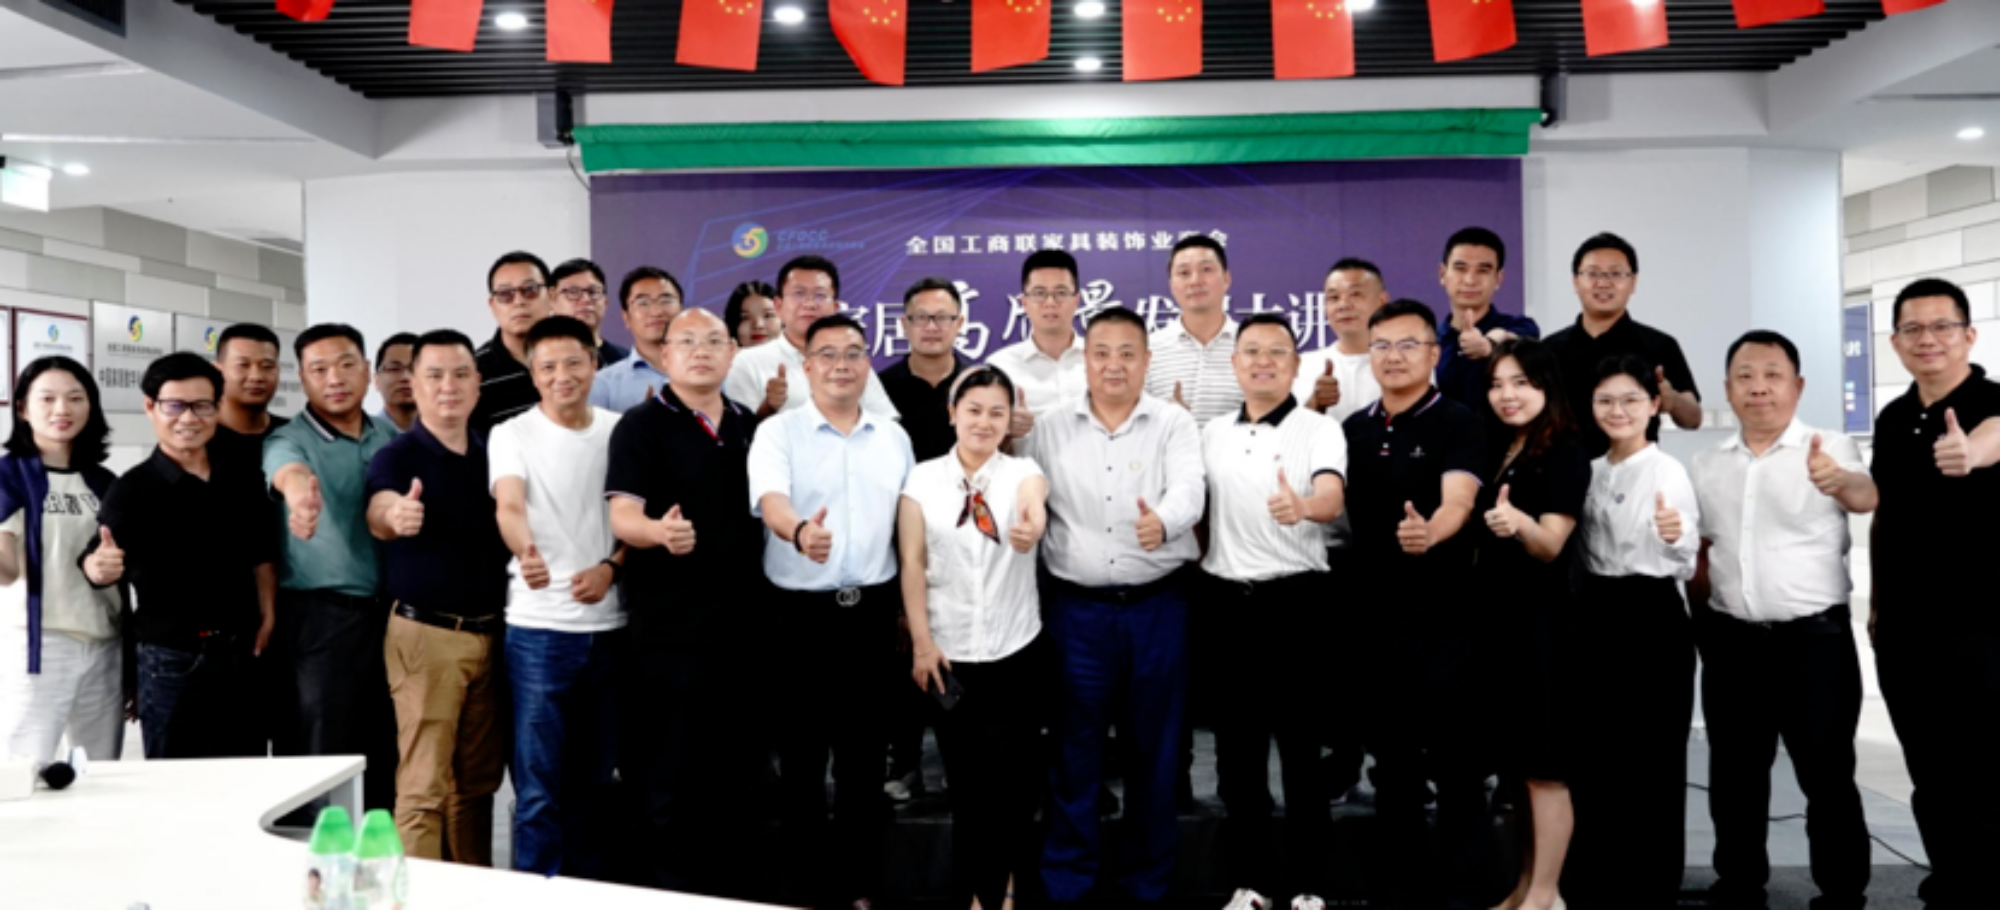 Trao quyền cho doanh nghiệp, Phát triển gắn kết, Trung Quốc Giảng đường phát triển nội thất gia đình chất lượng cao, Hoạt động salon ngoại tuyến Giai đoạn 2, được tổ chức tại Quảng Châu